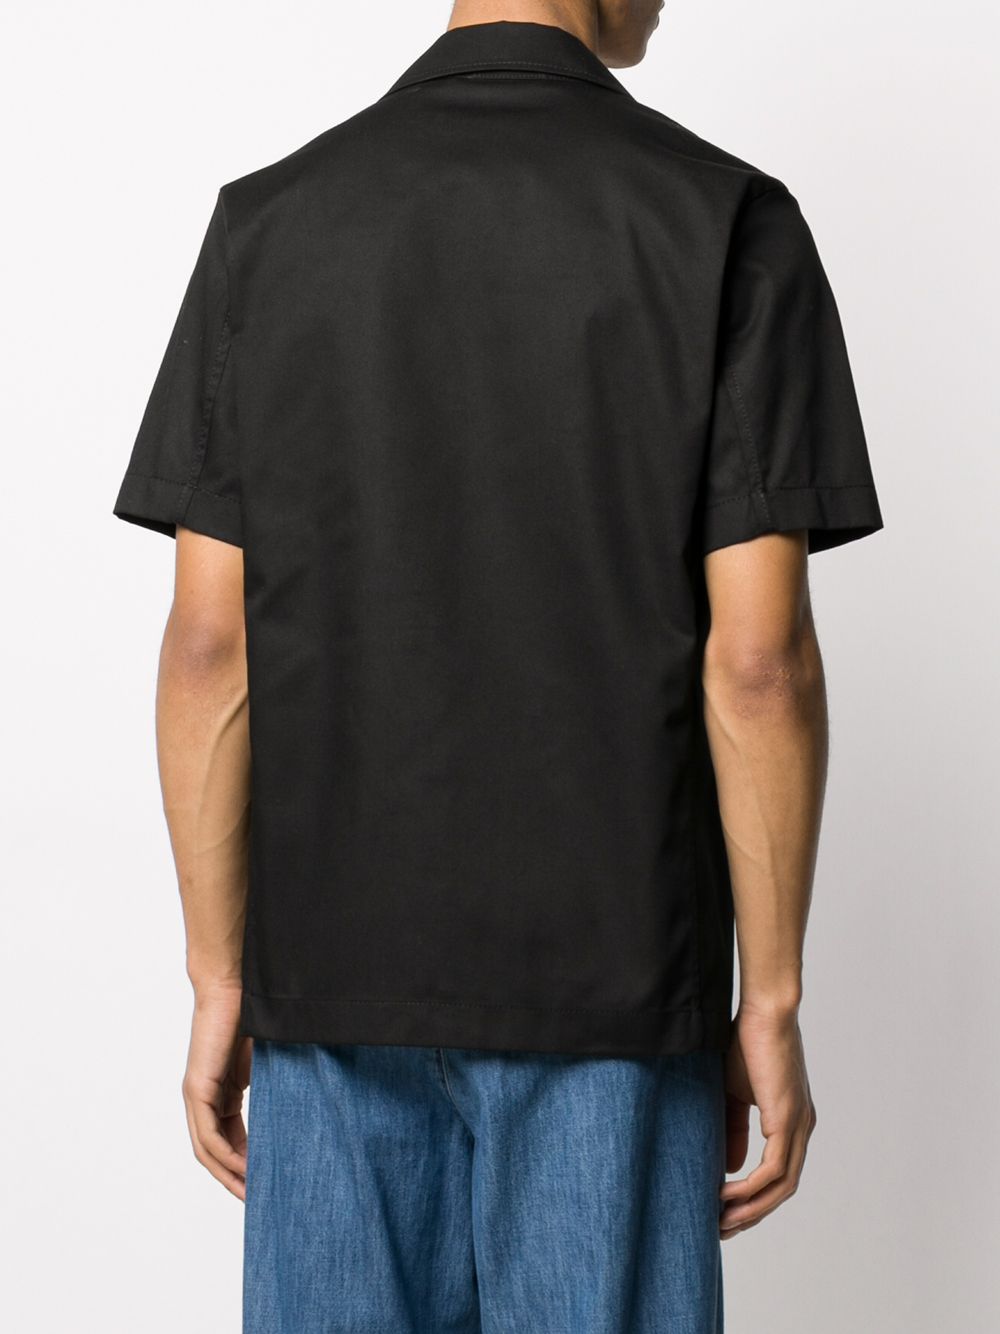 фото Marni рубашка свободного кроя с карманами